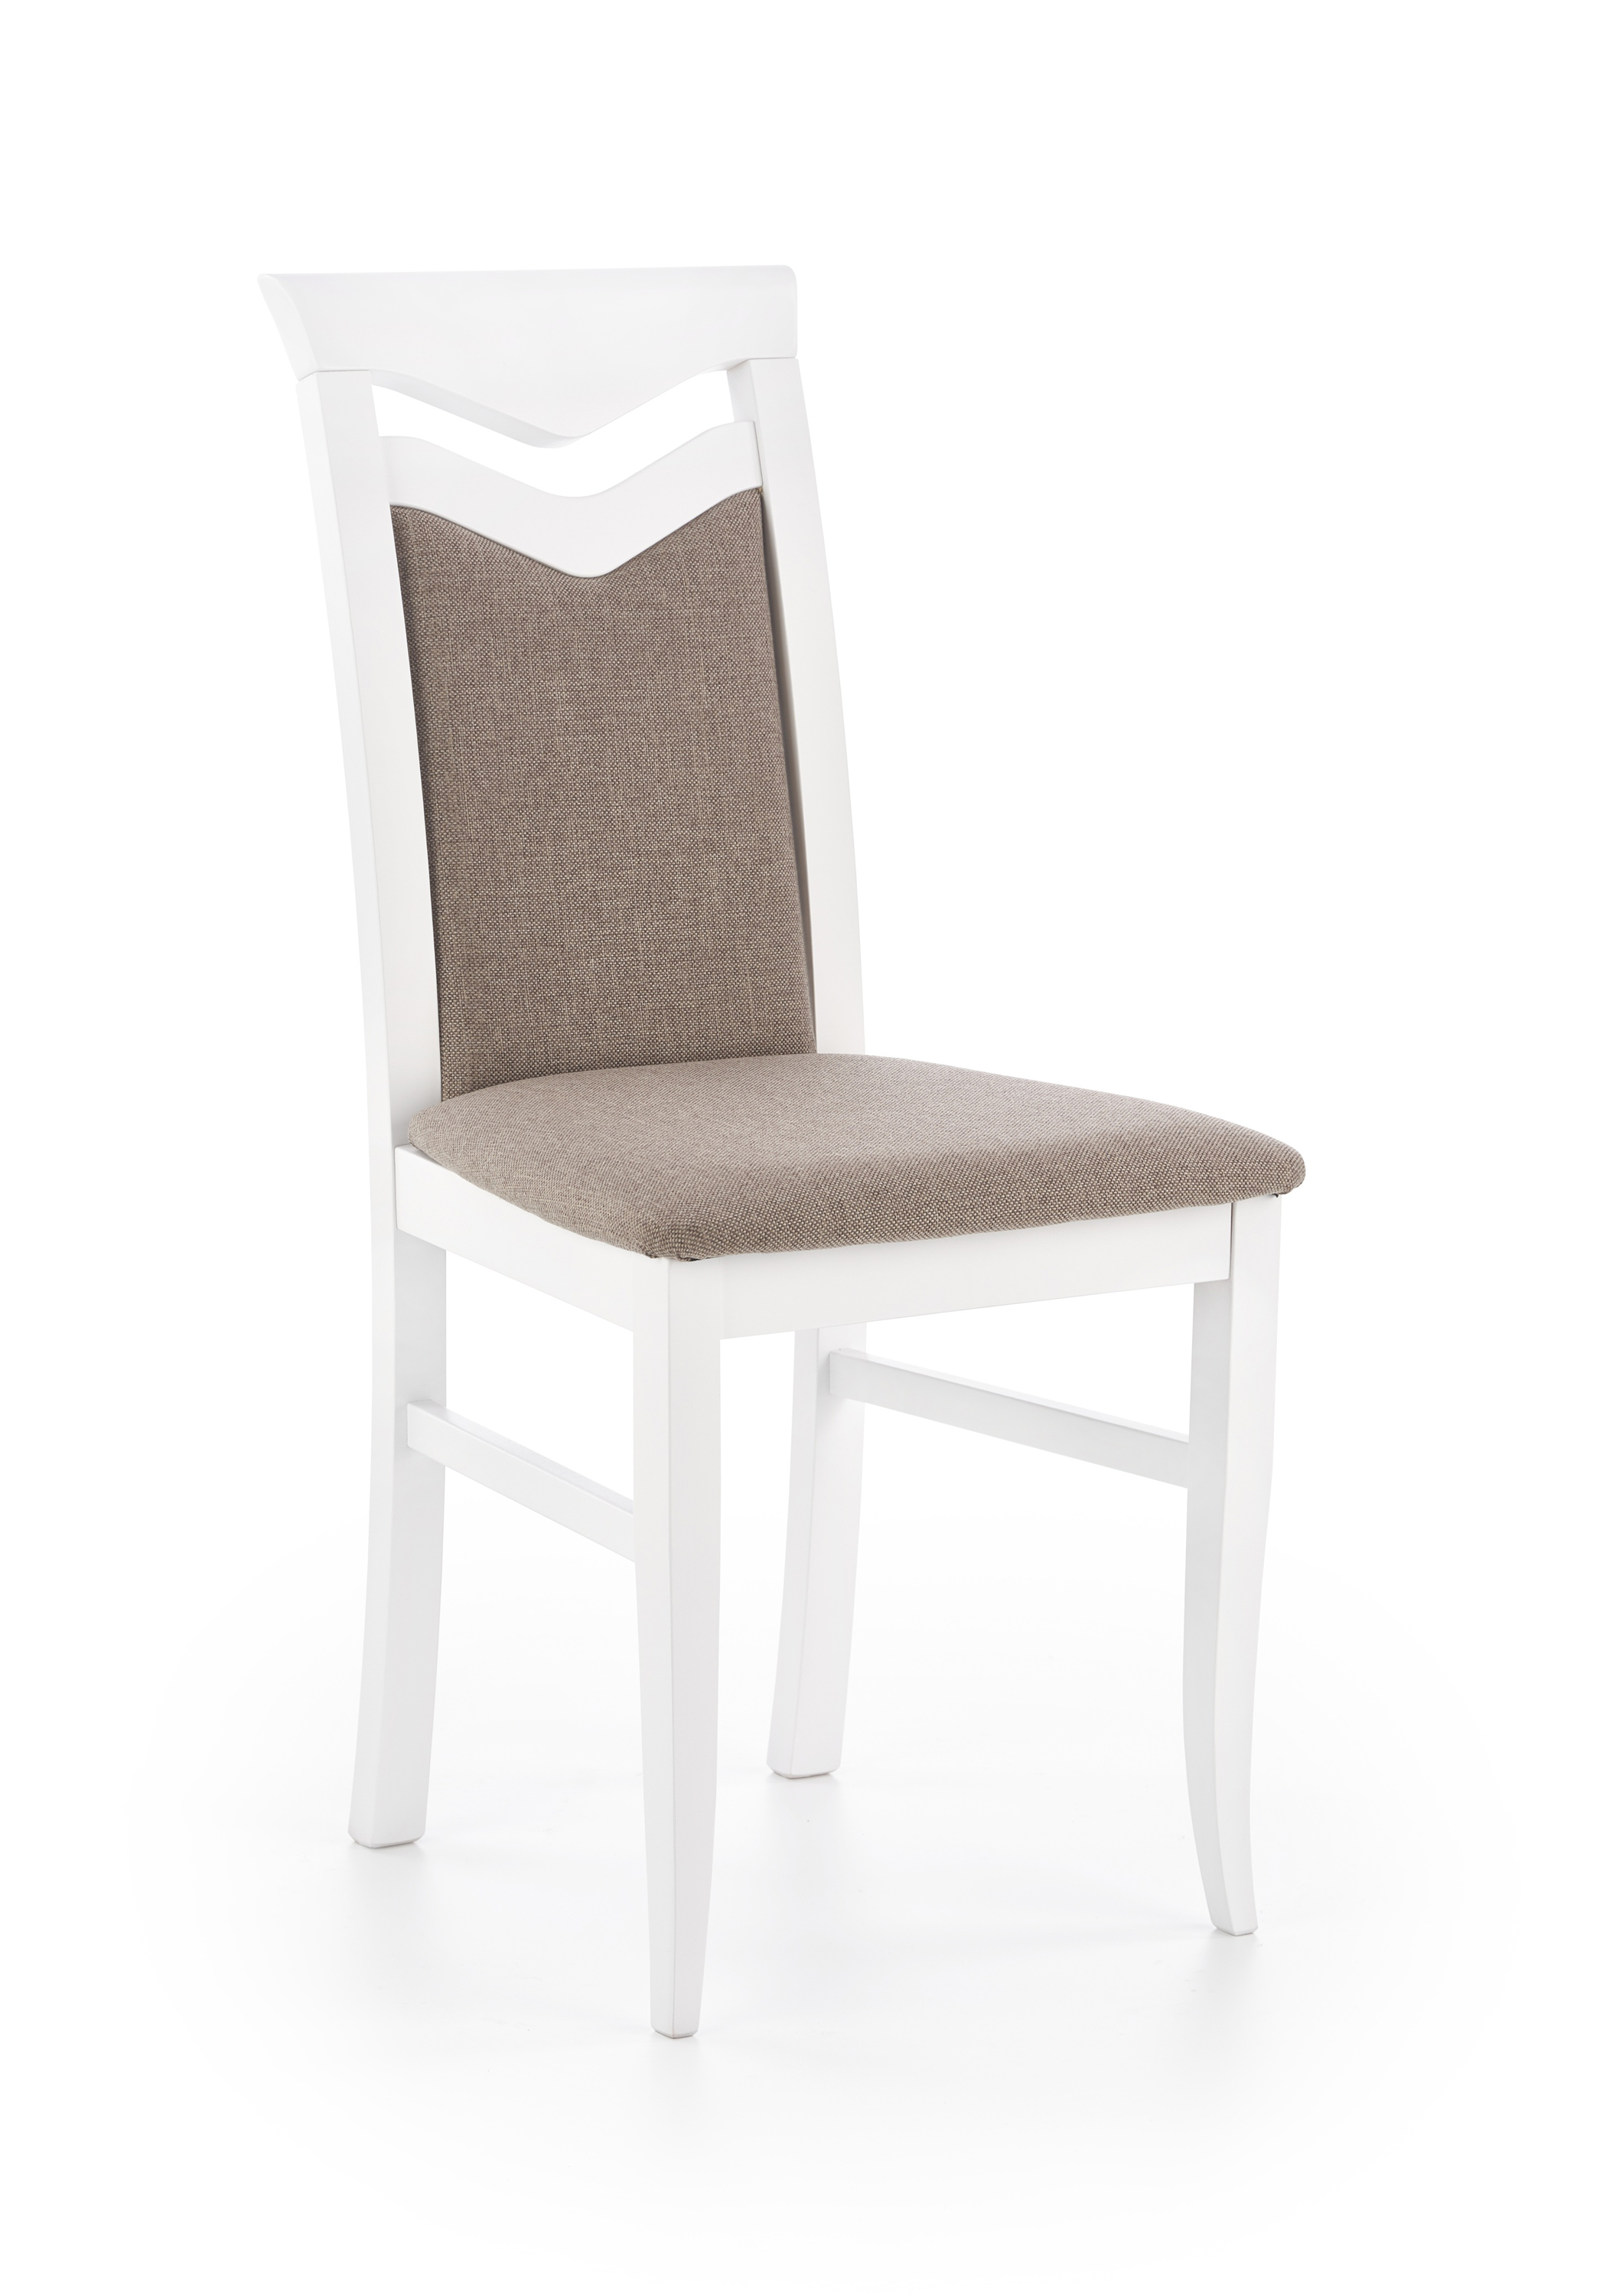 CITRONE szék - fehér / kárpitozott: INARI 23 citrone Židle Bílý / čal: INARI 23